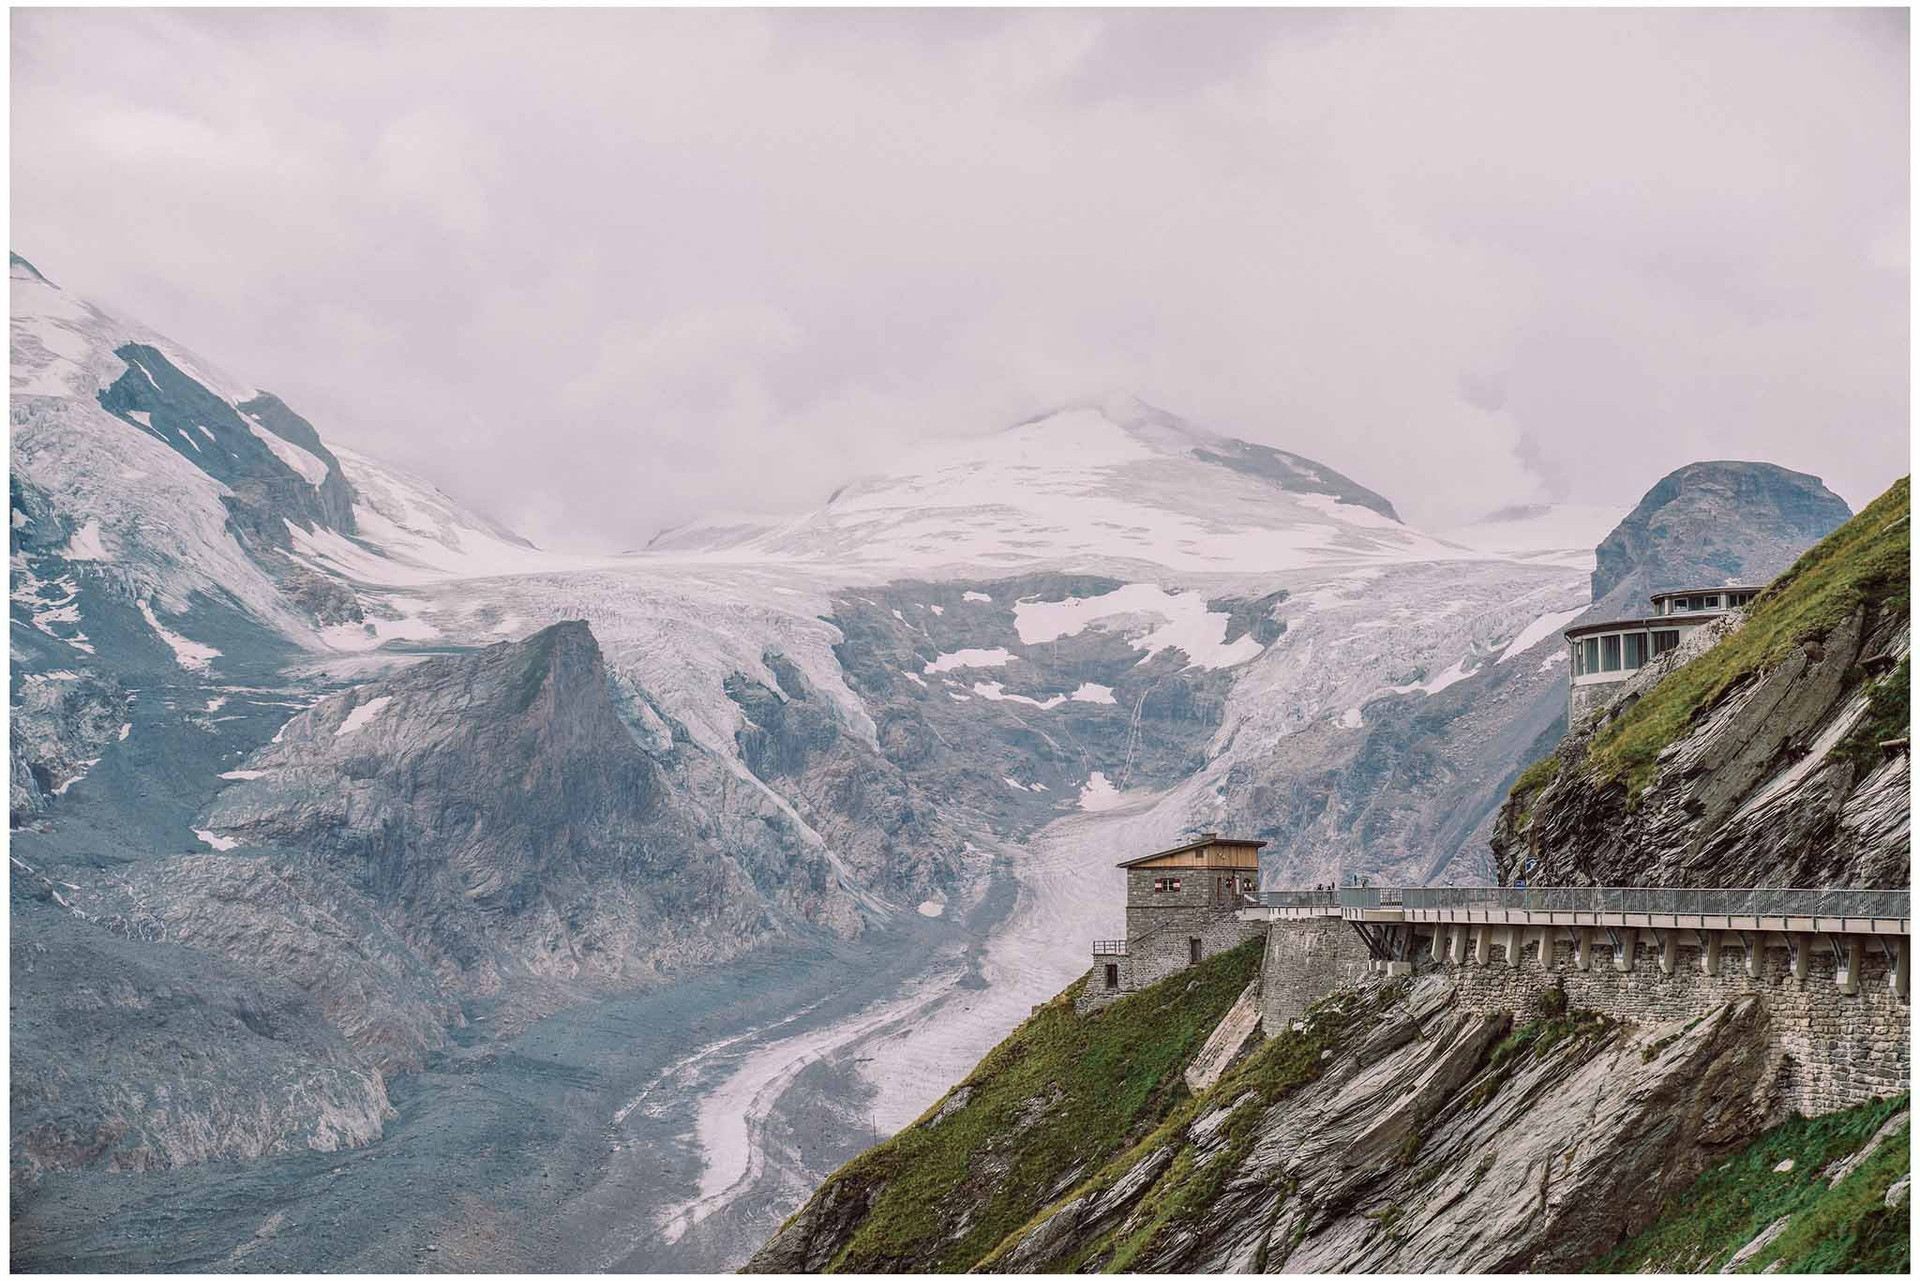 Du khách có thể chiêm ngưỡng khung cảnh hùng vĩ của dãy núi Alps, công viên quốc gia High Tauern và sông băng Pasterze trên cung đèo Grossglockner